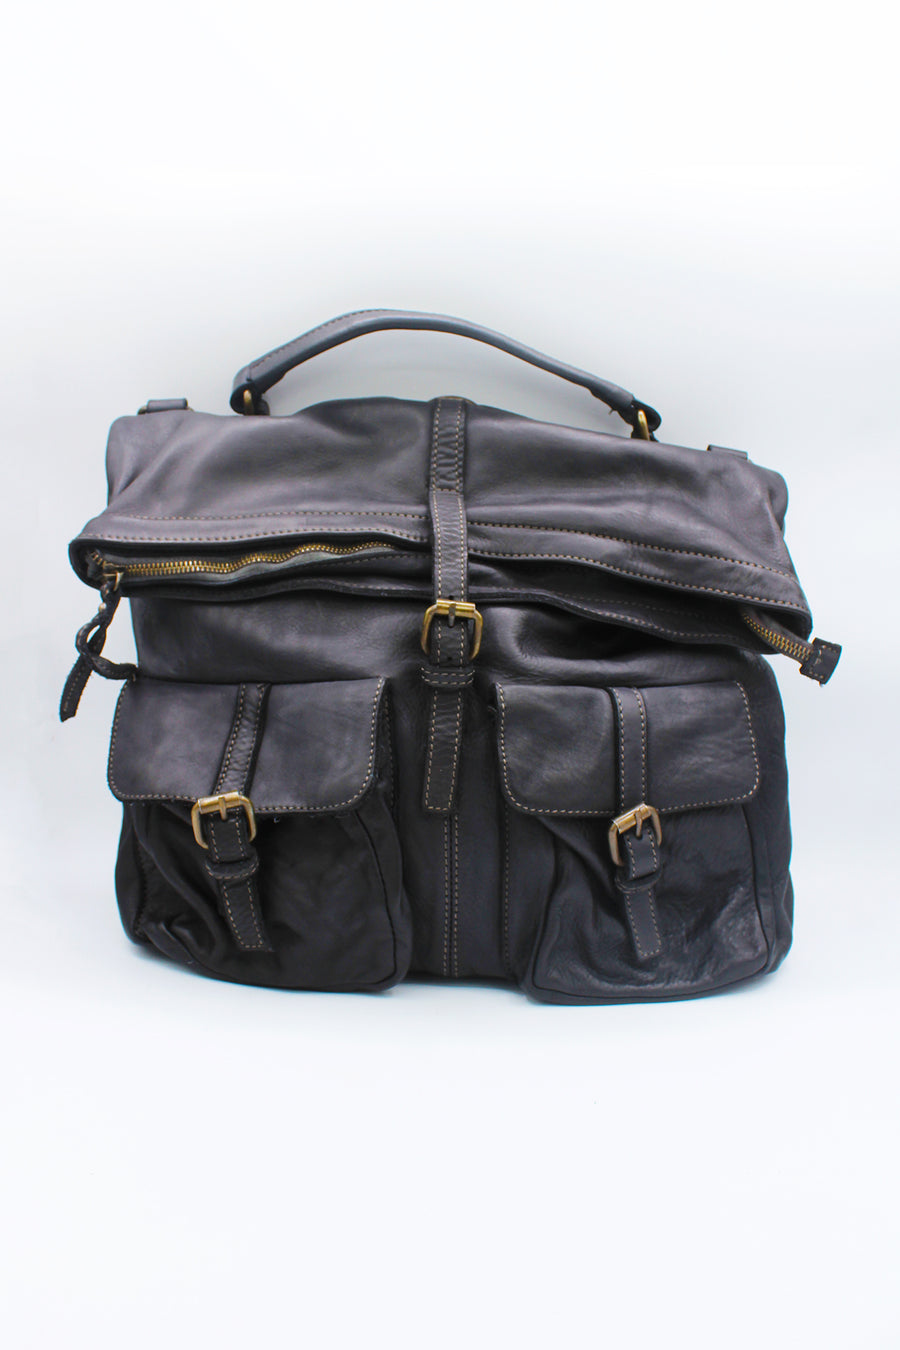 Vintage unisex bag/backpack